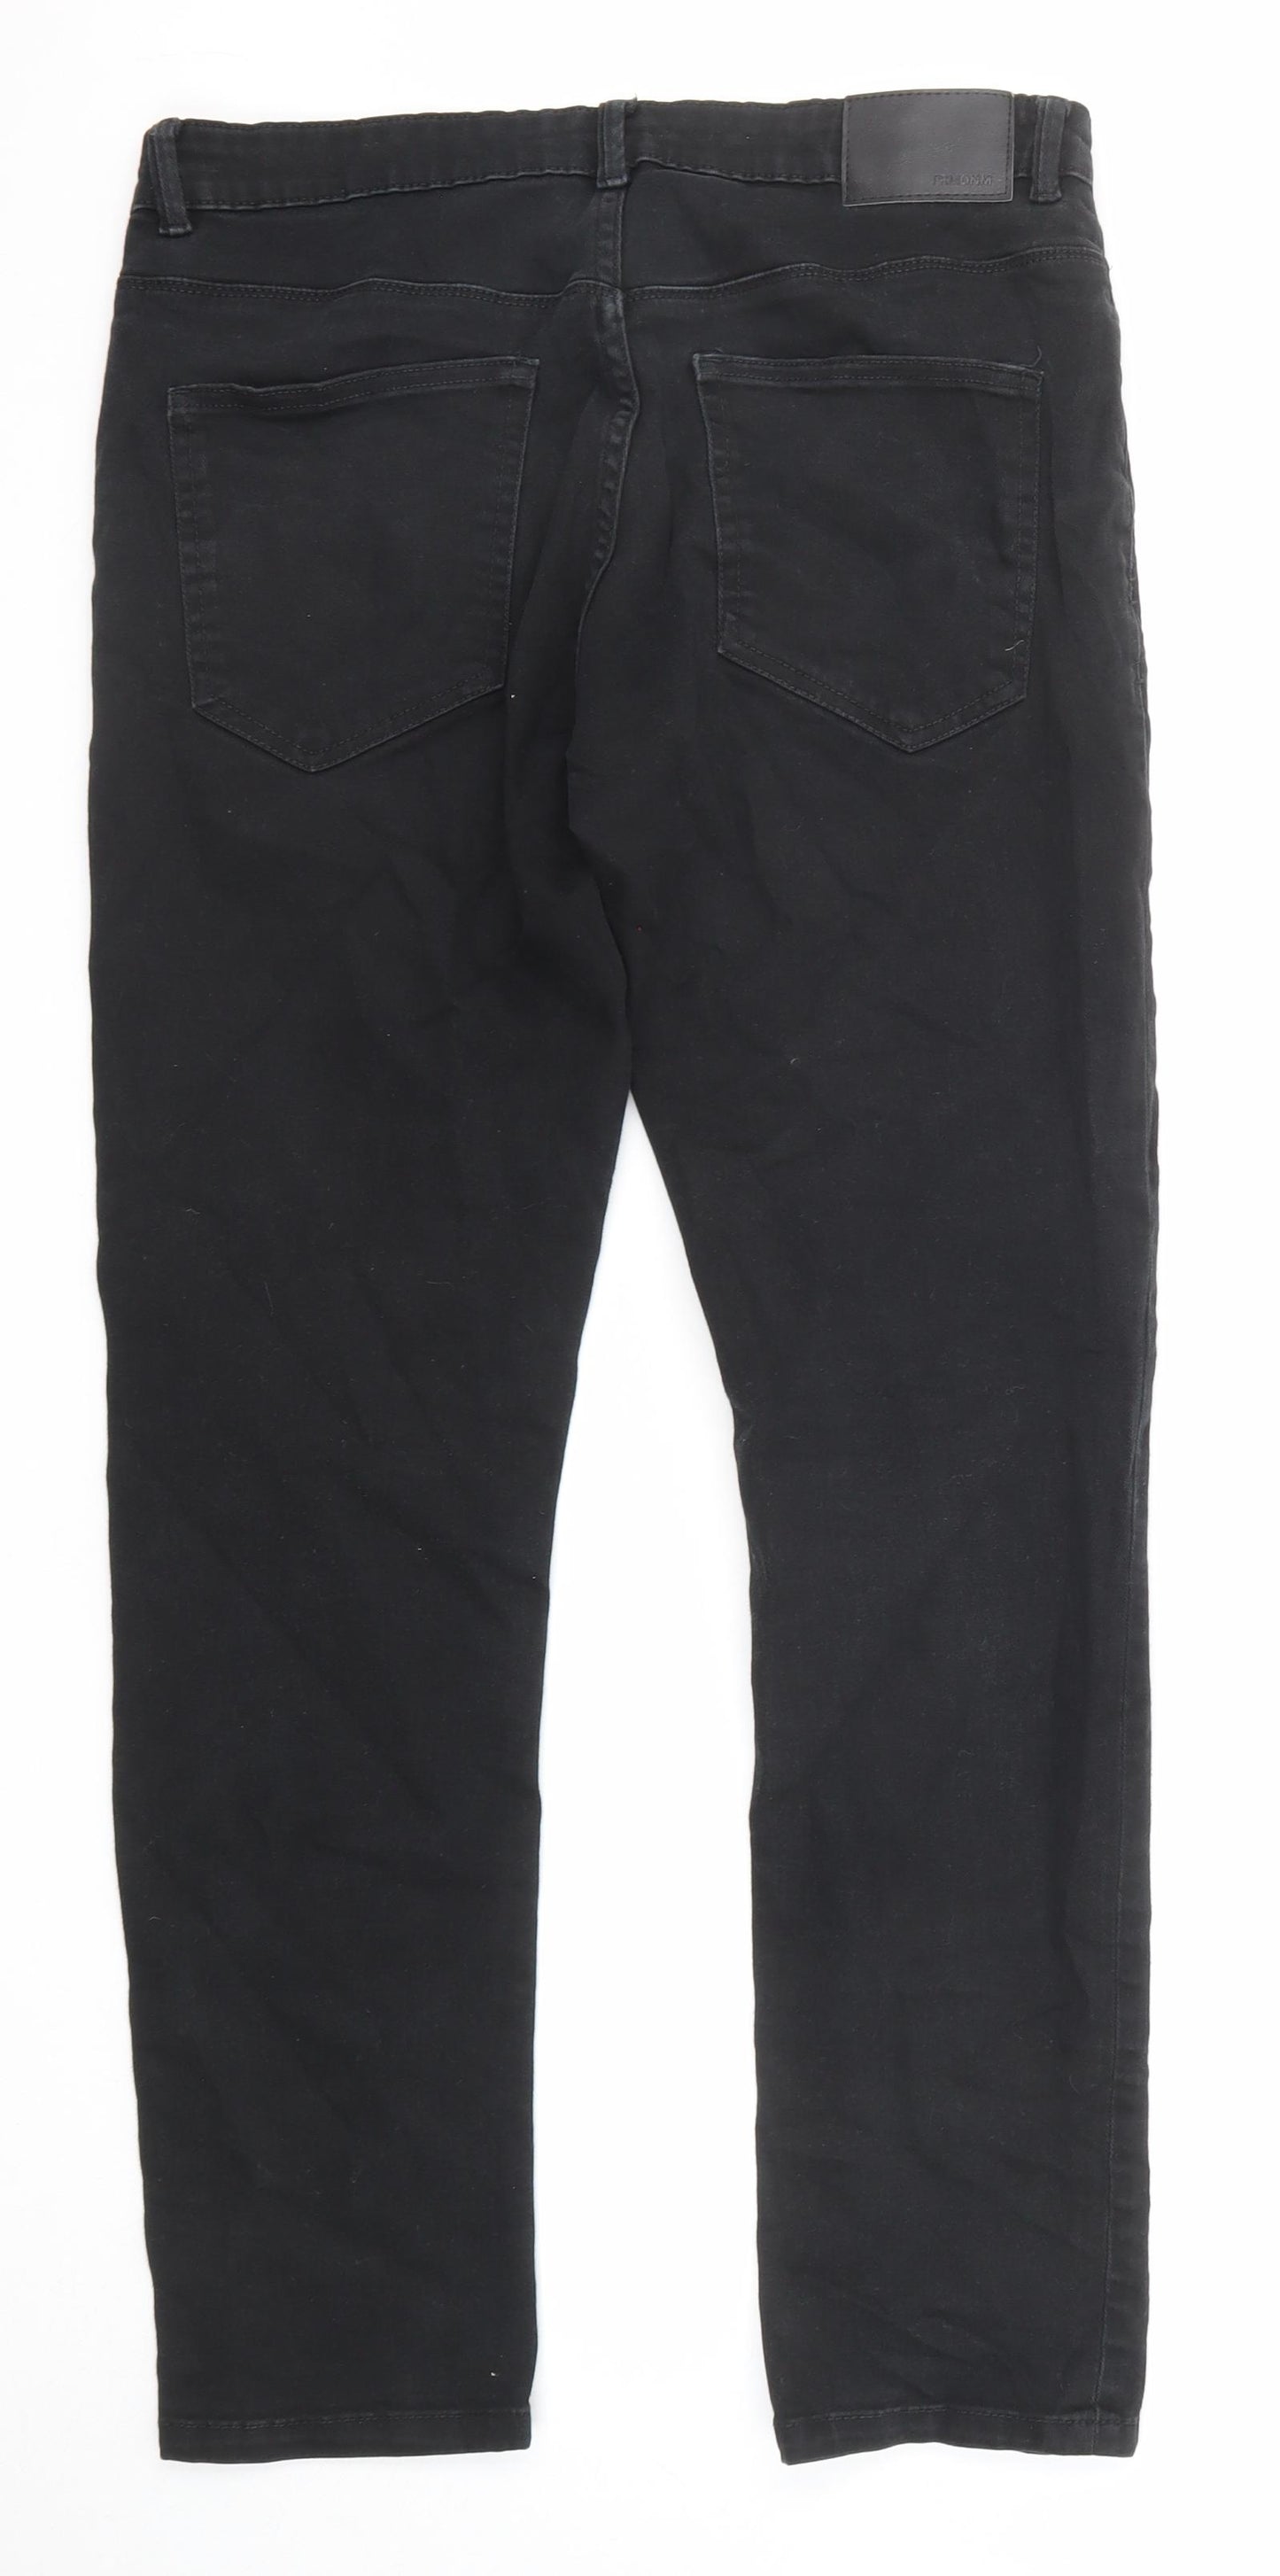 George Mens Black Cotton Skinny Jeans Size 34 in L32 in Slim Zip